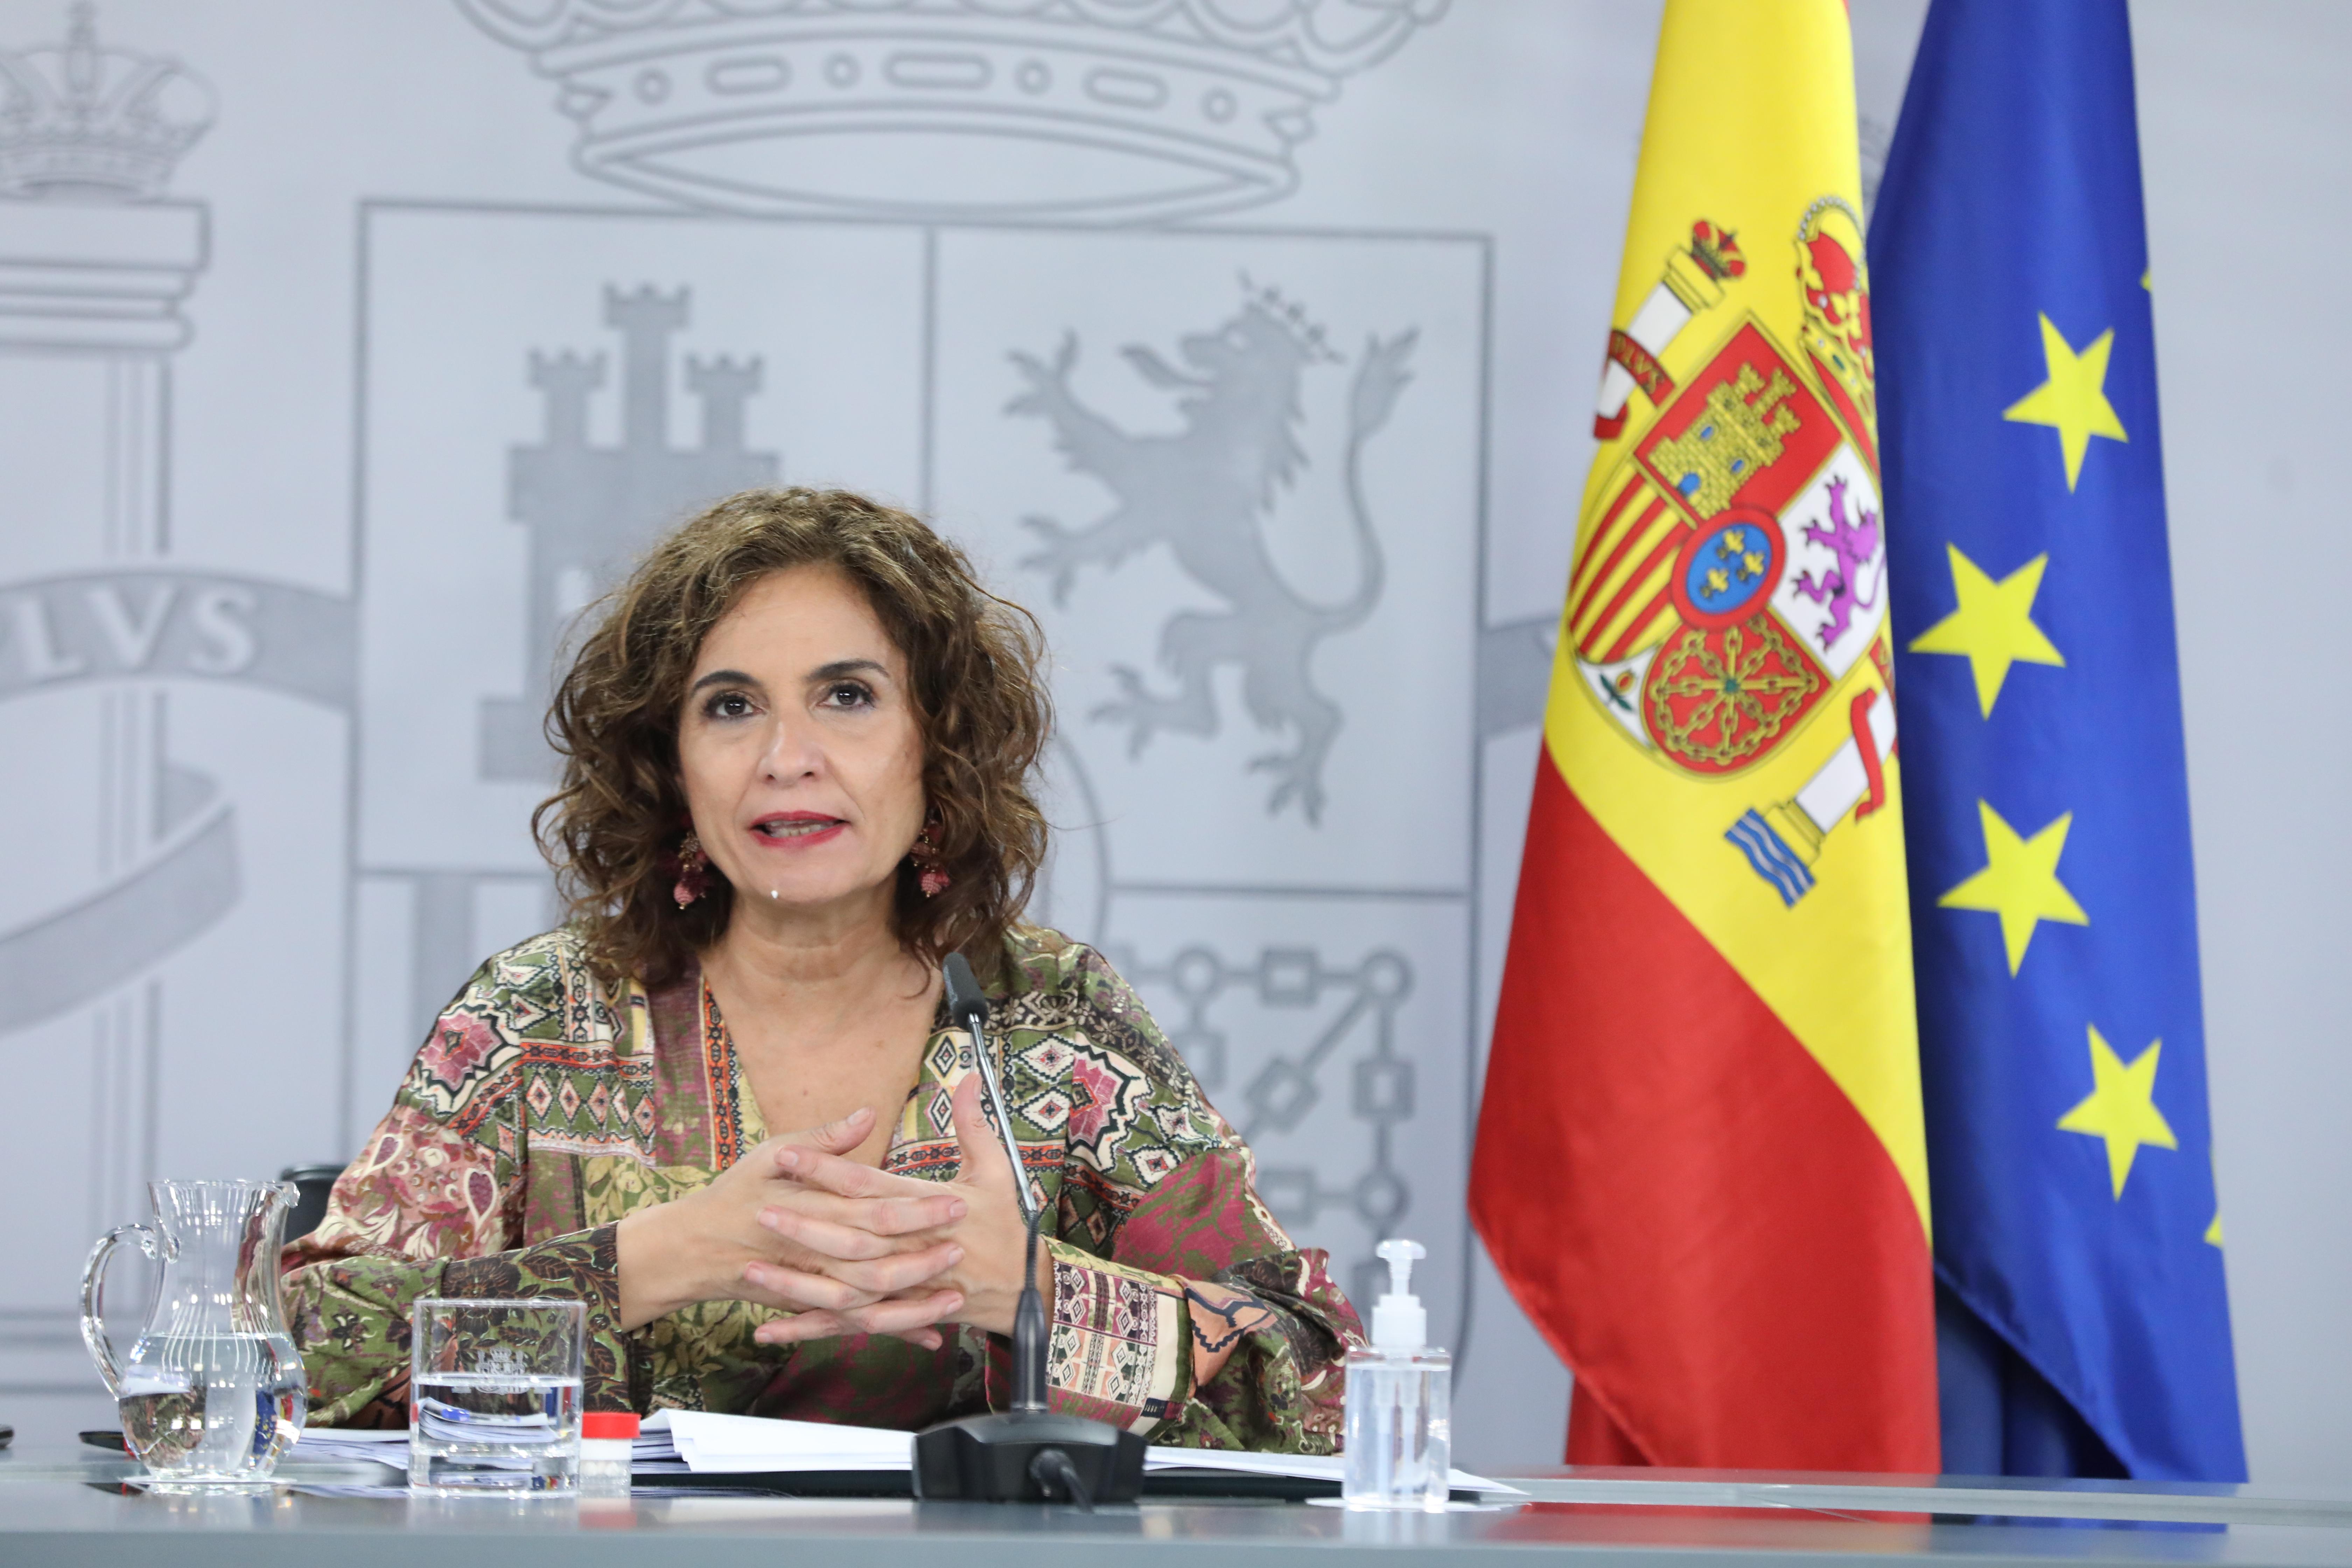 La ministra portavoz, María Jesús Montero, en la rueda de prensa posterior al Consejo de Ministros. Europa Press